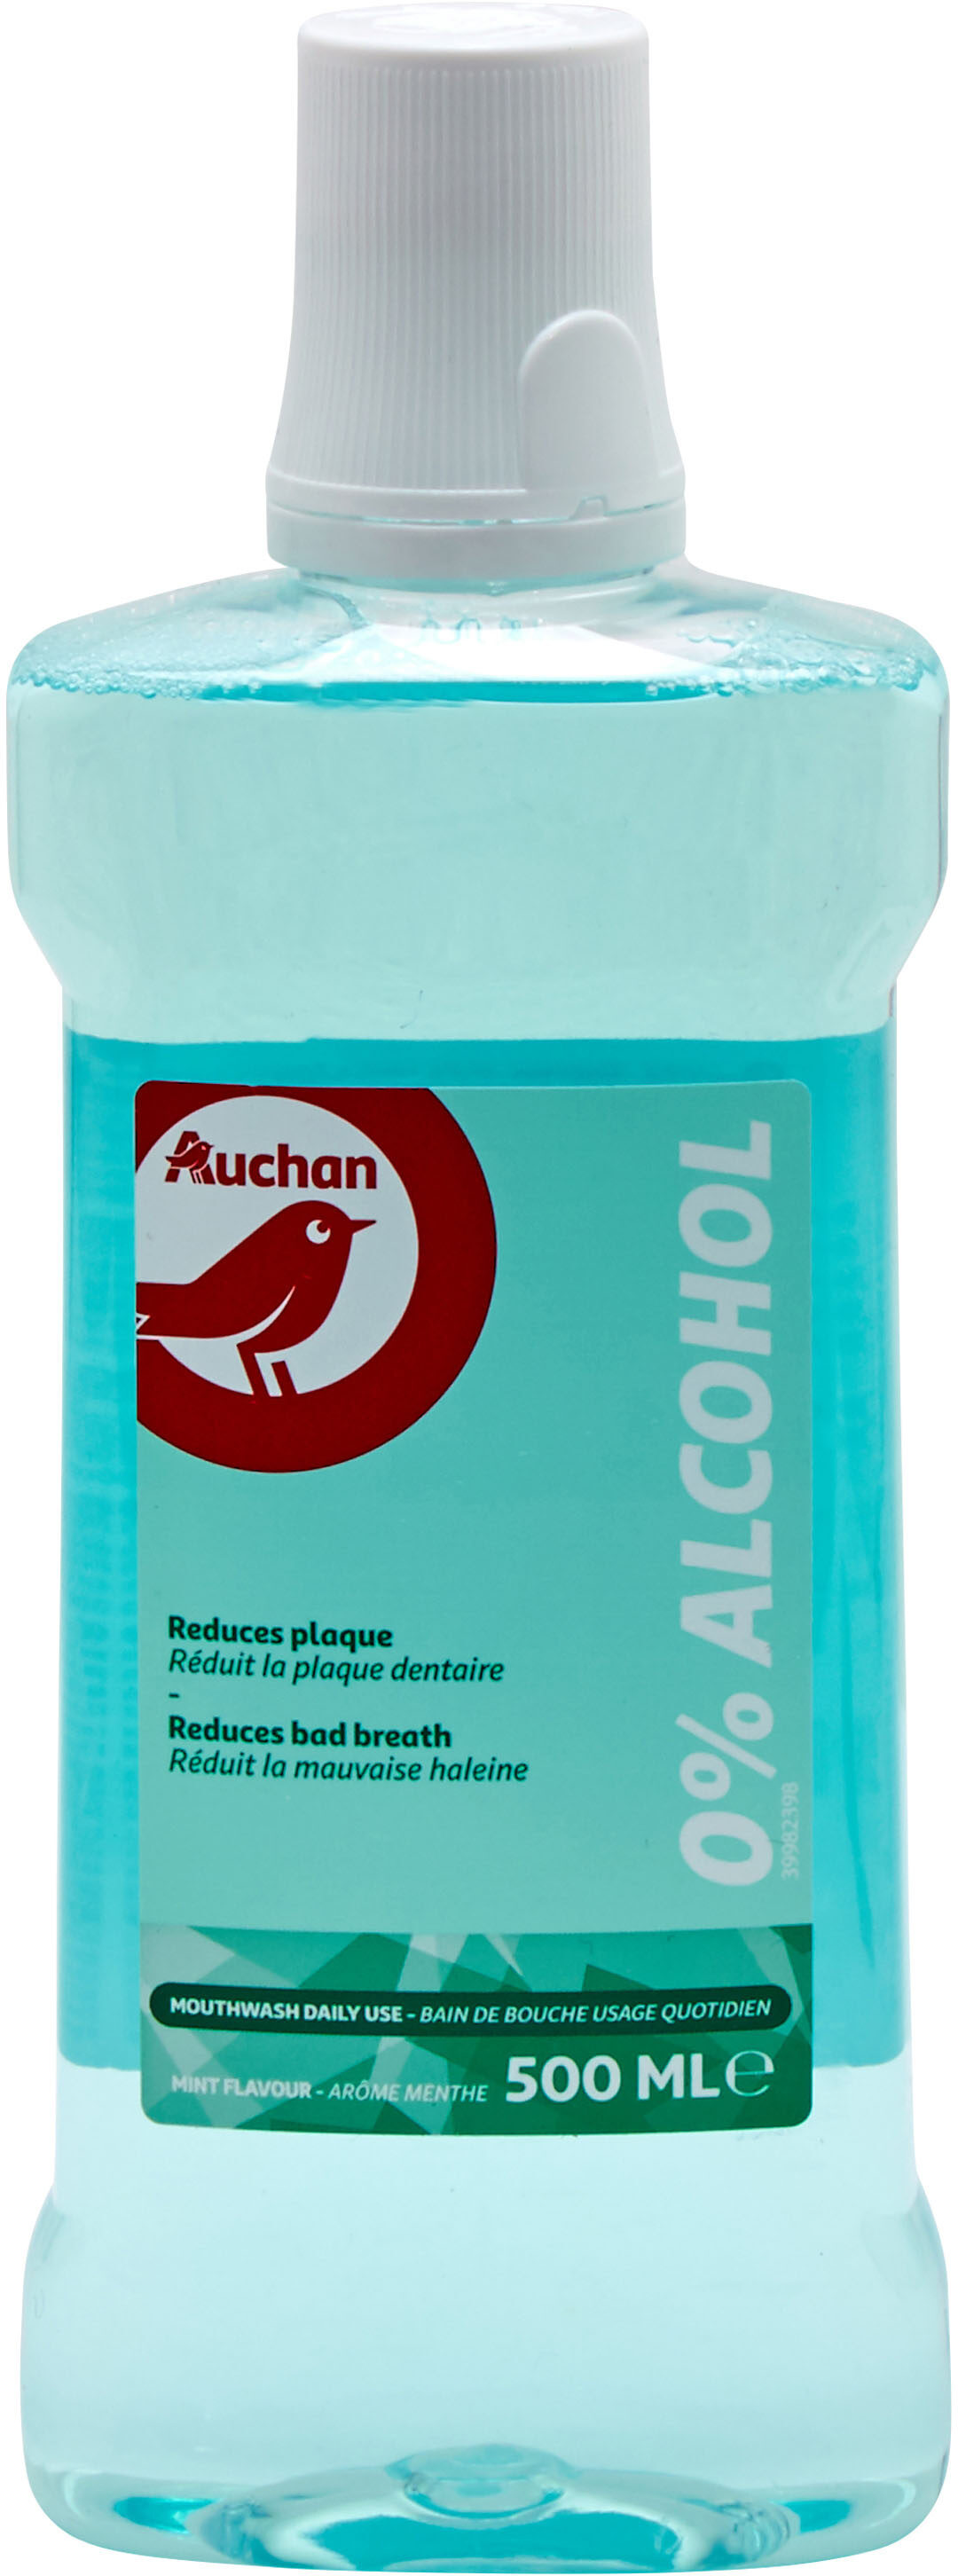 Auchan - bain de bouche - fraicheur 0% alcool - 500ml - 製品 - fr